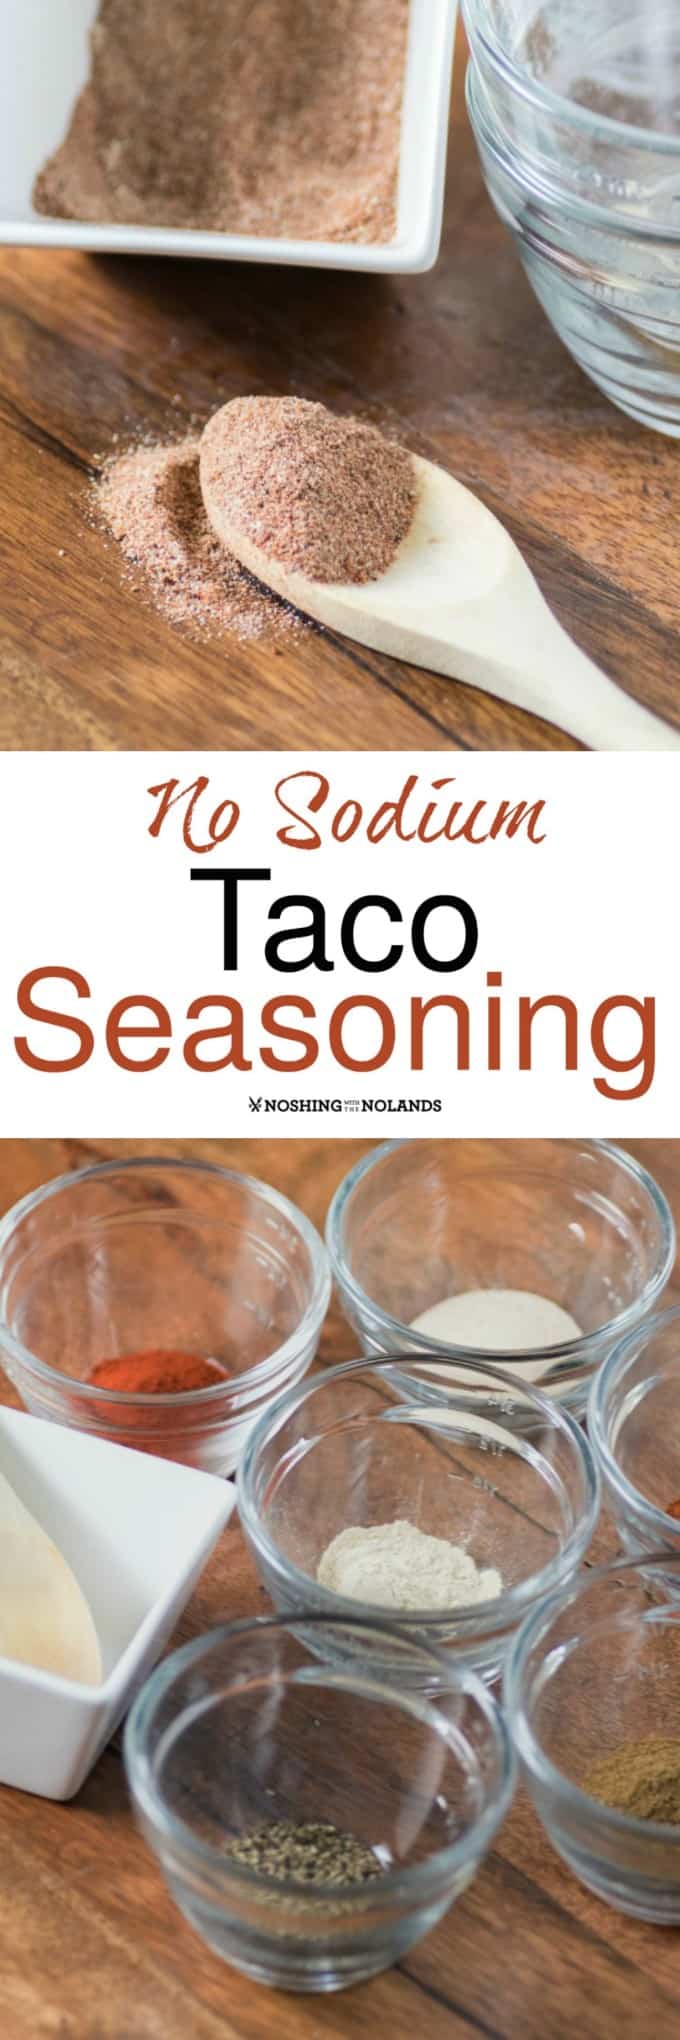 https://noshingwiththenolands.com/wp-content/uploads/2017/07/No-Sodium-Taco-Seasoning-Collage-Custom-1.jpg